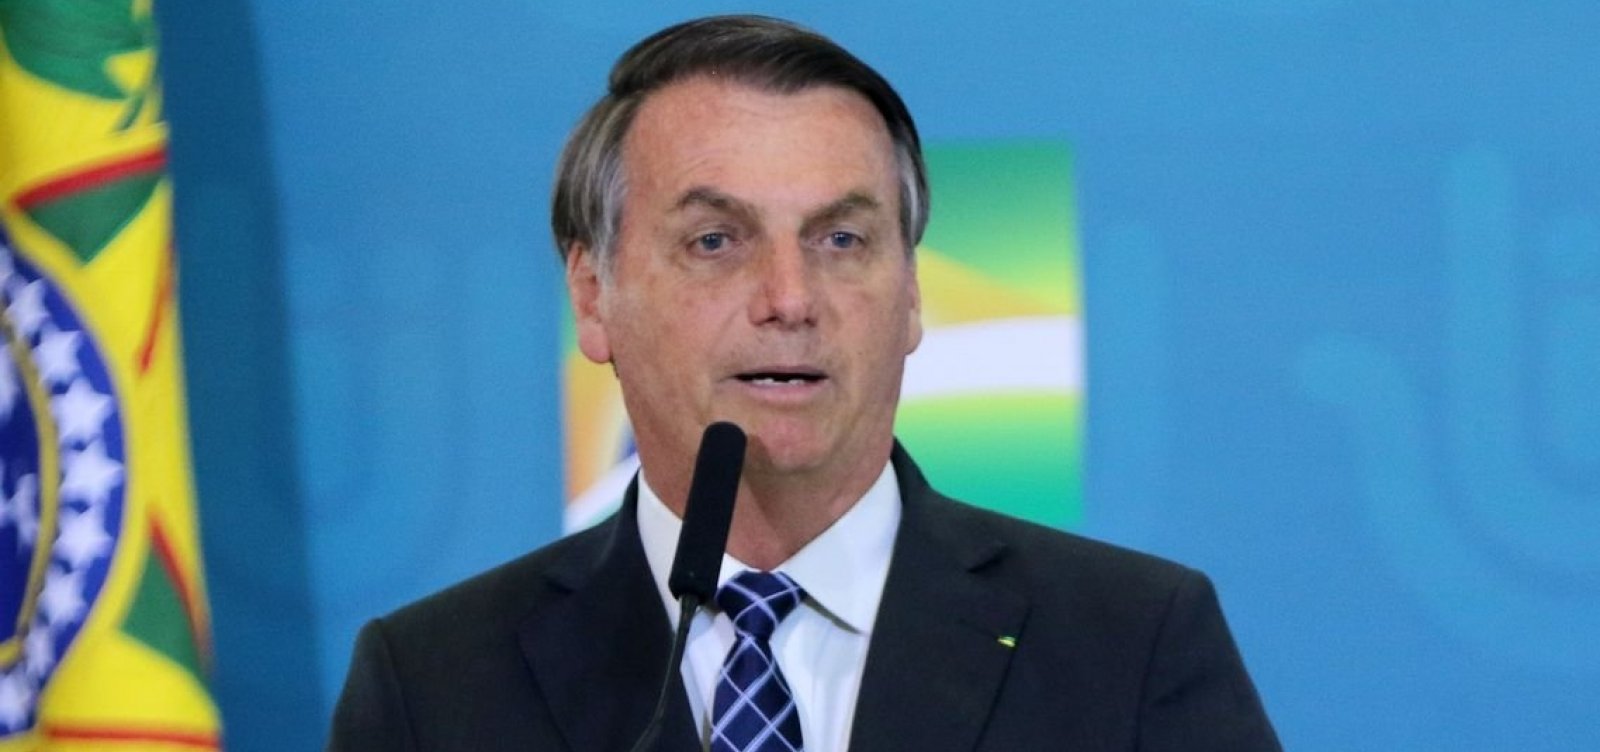 Bolsonaro retirou lesões causadas por exposição ao sol